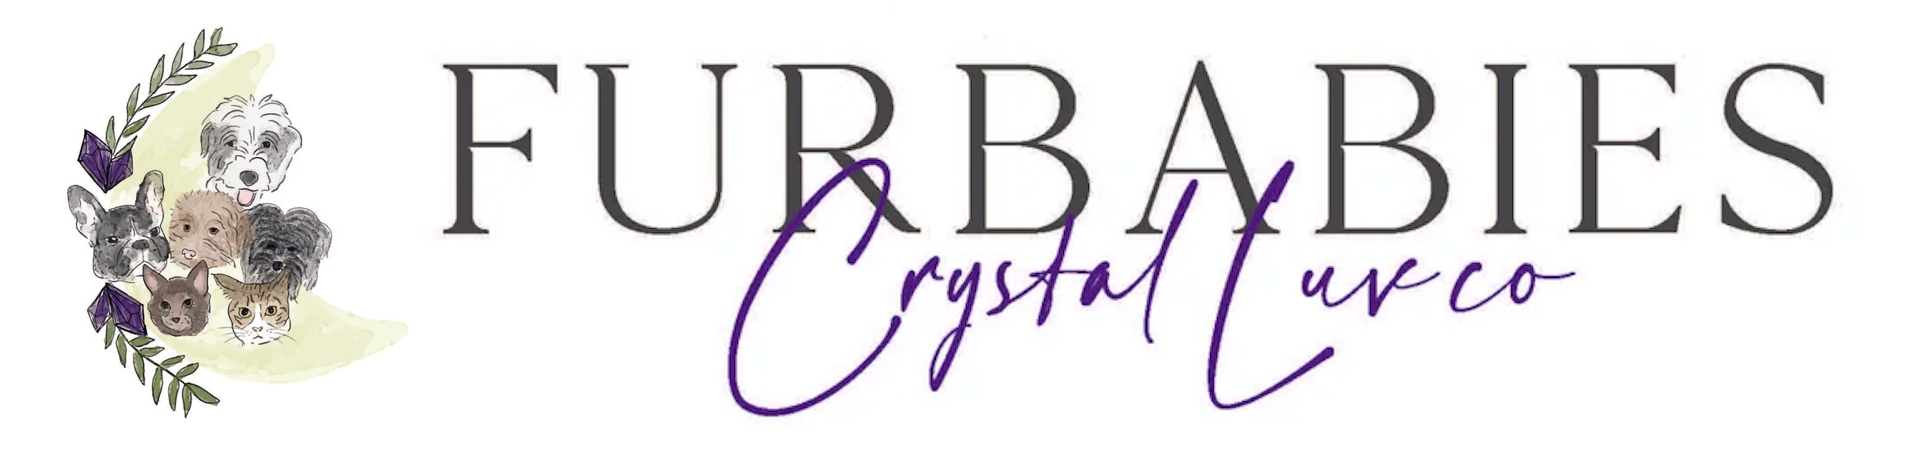 Furbabies Crystal Luv Co.